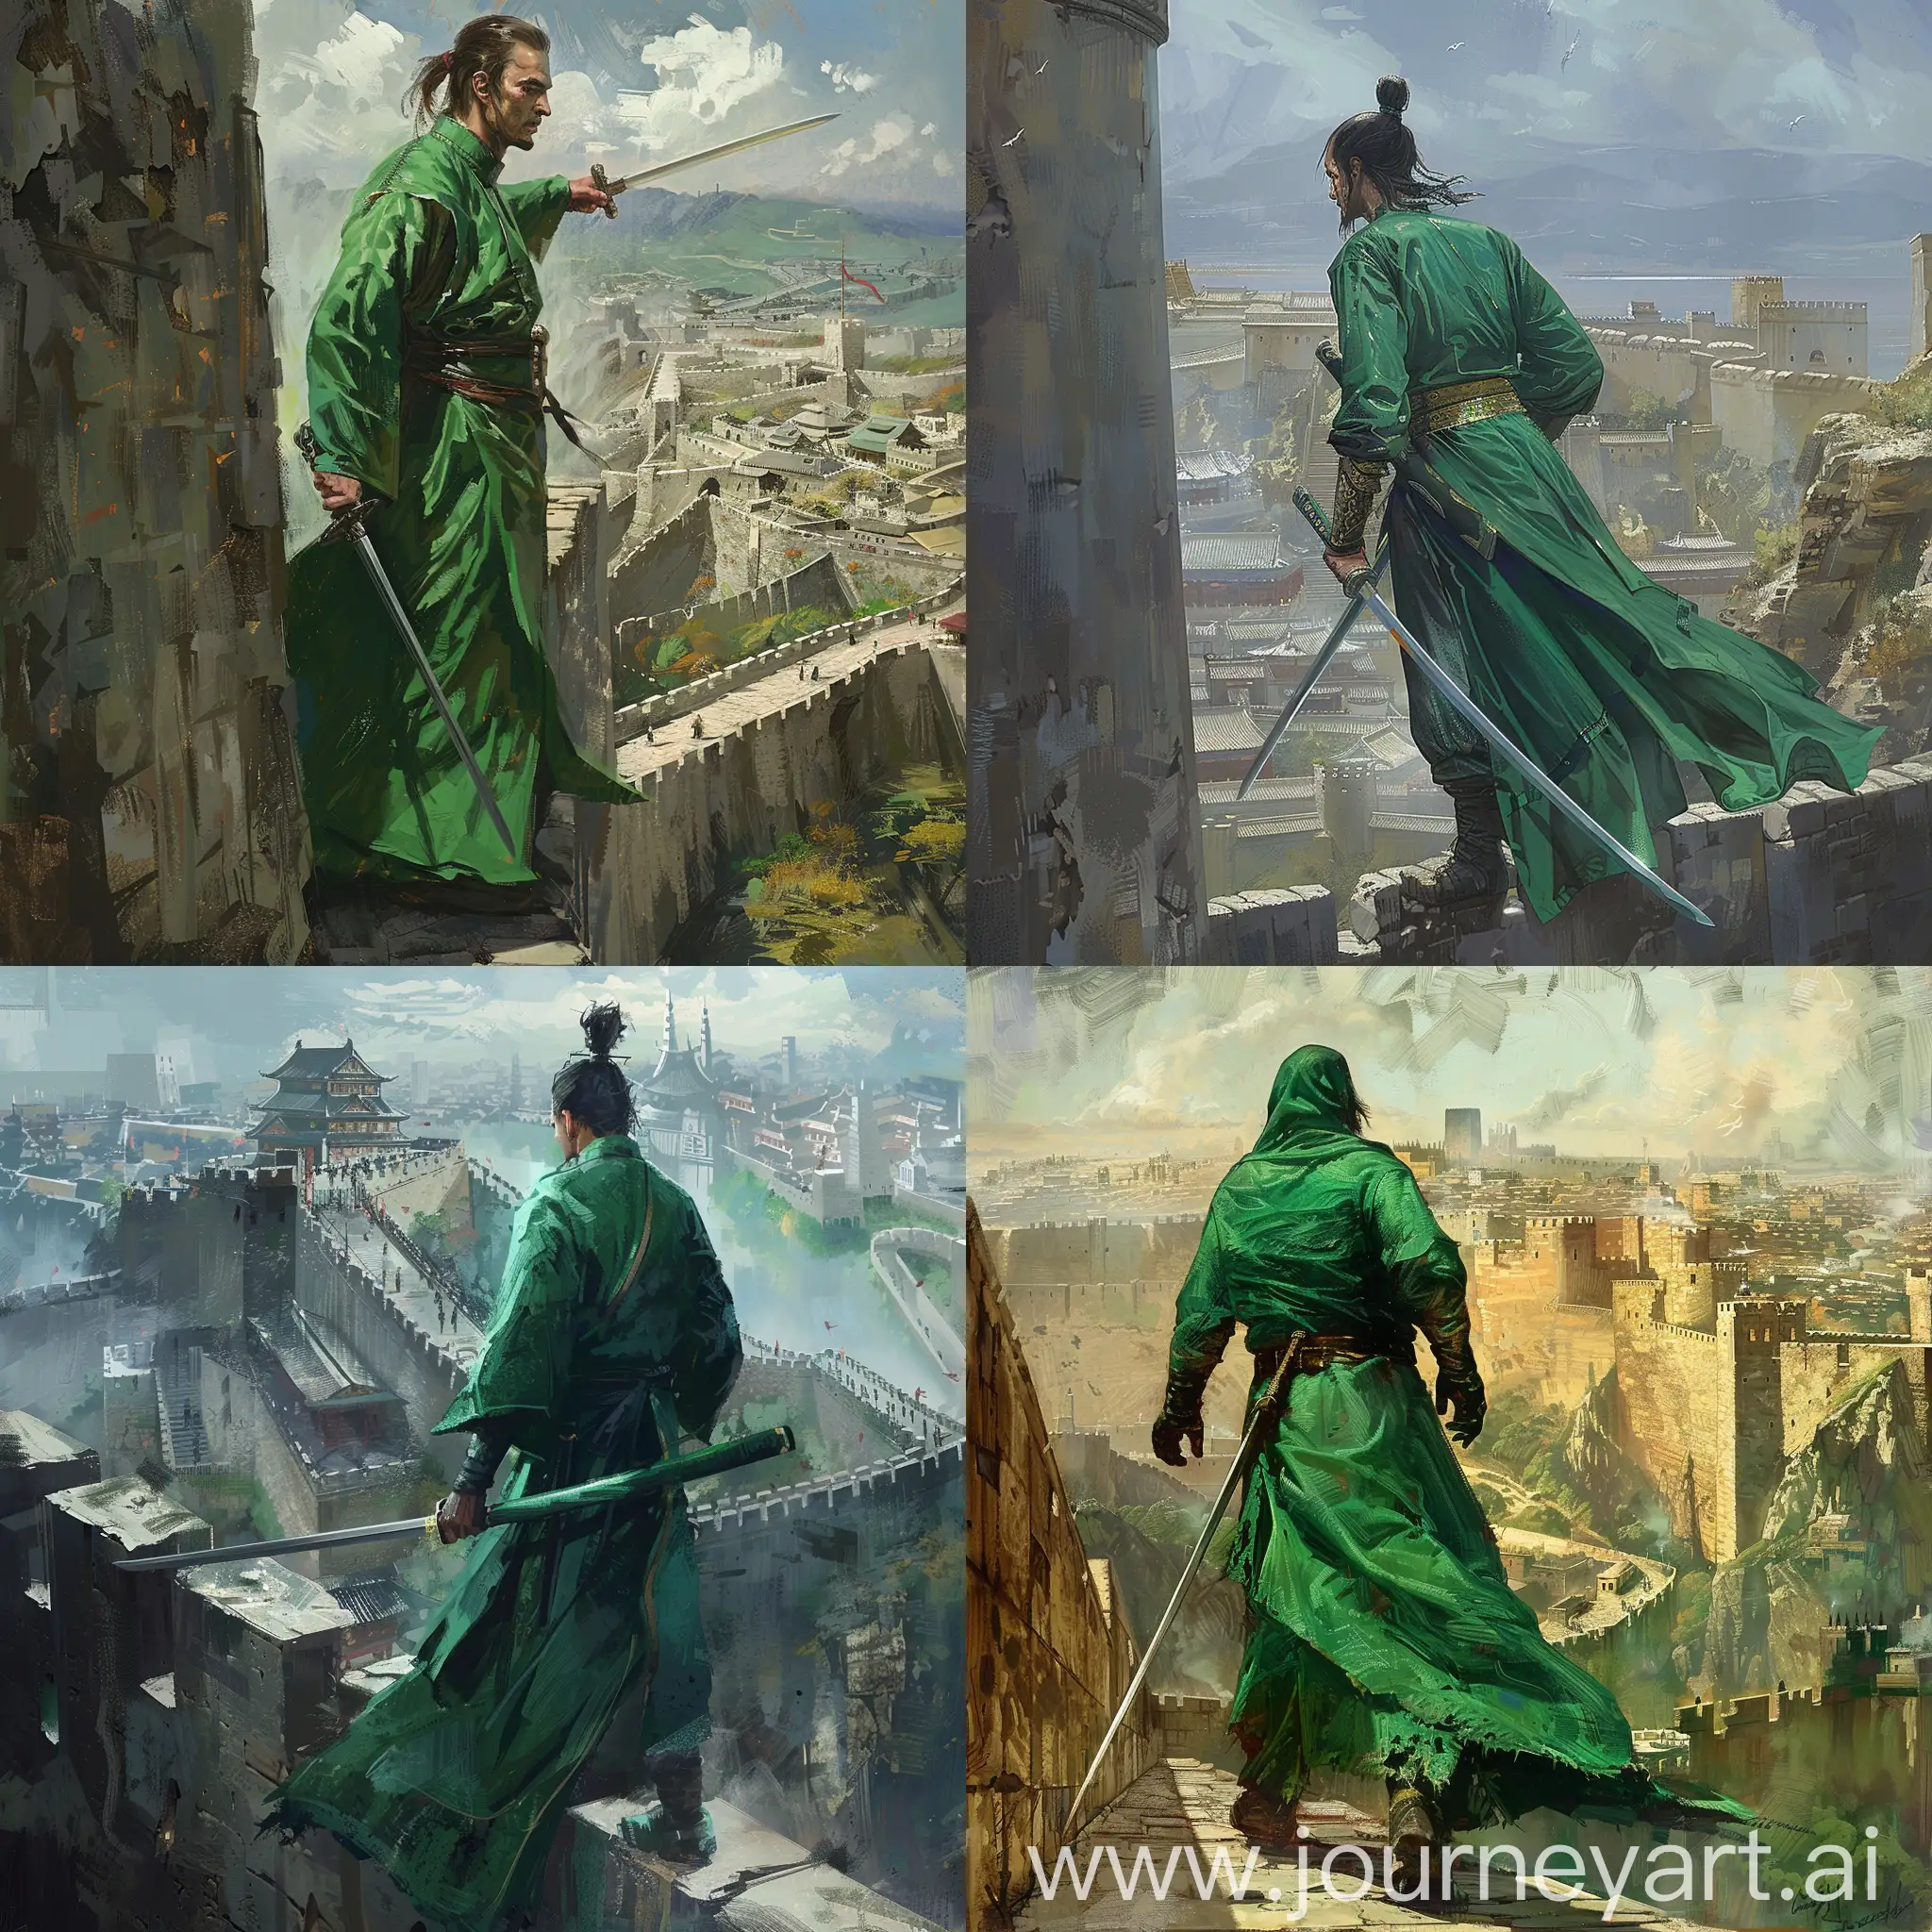 Swordsman-in-Green-Robe-Defending-City-Walls